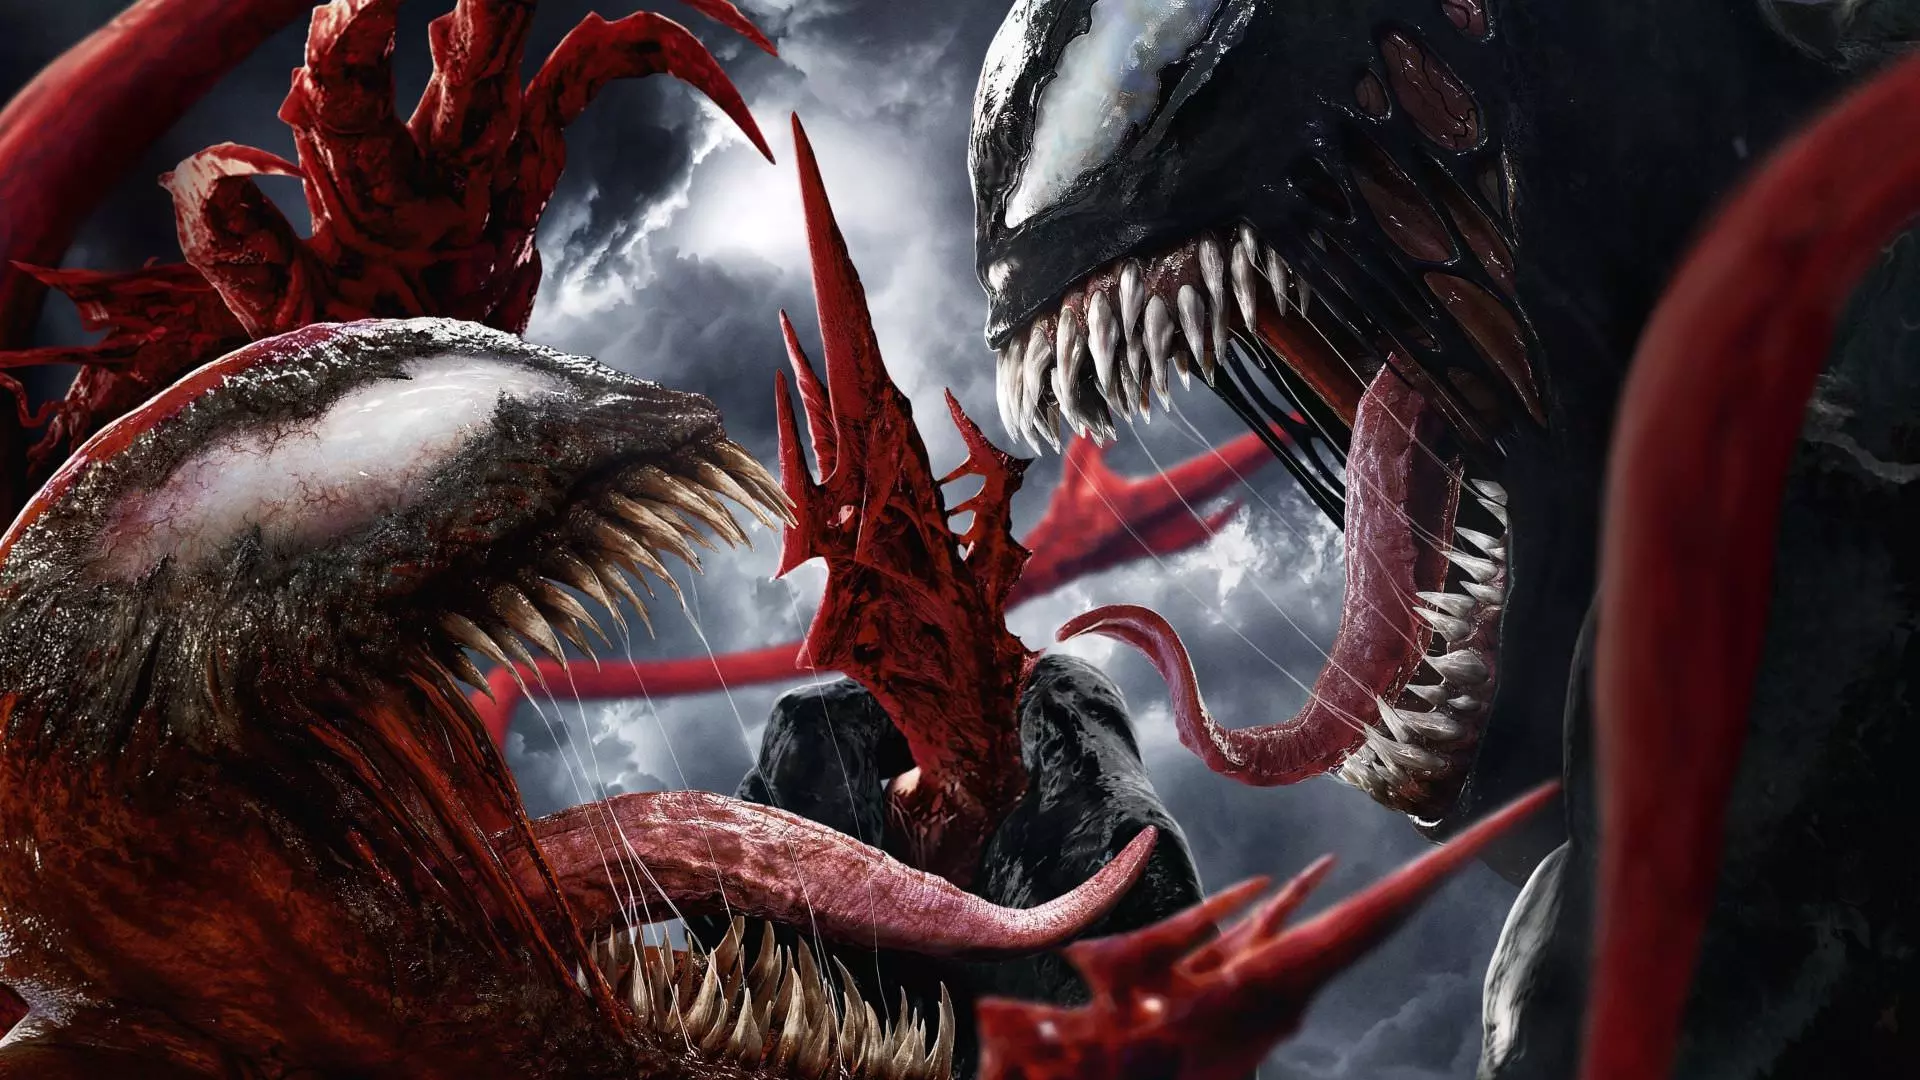 ونوم و کارنیج در حال مبارزه در پوستر فیلم Venom: Let There Be Carnage